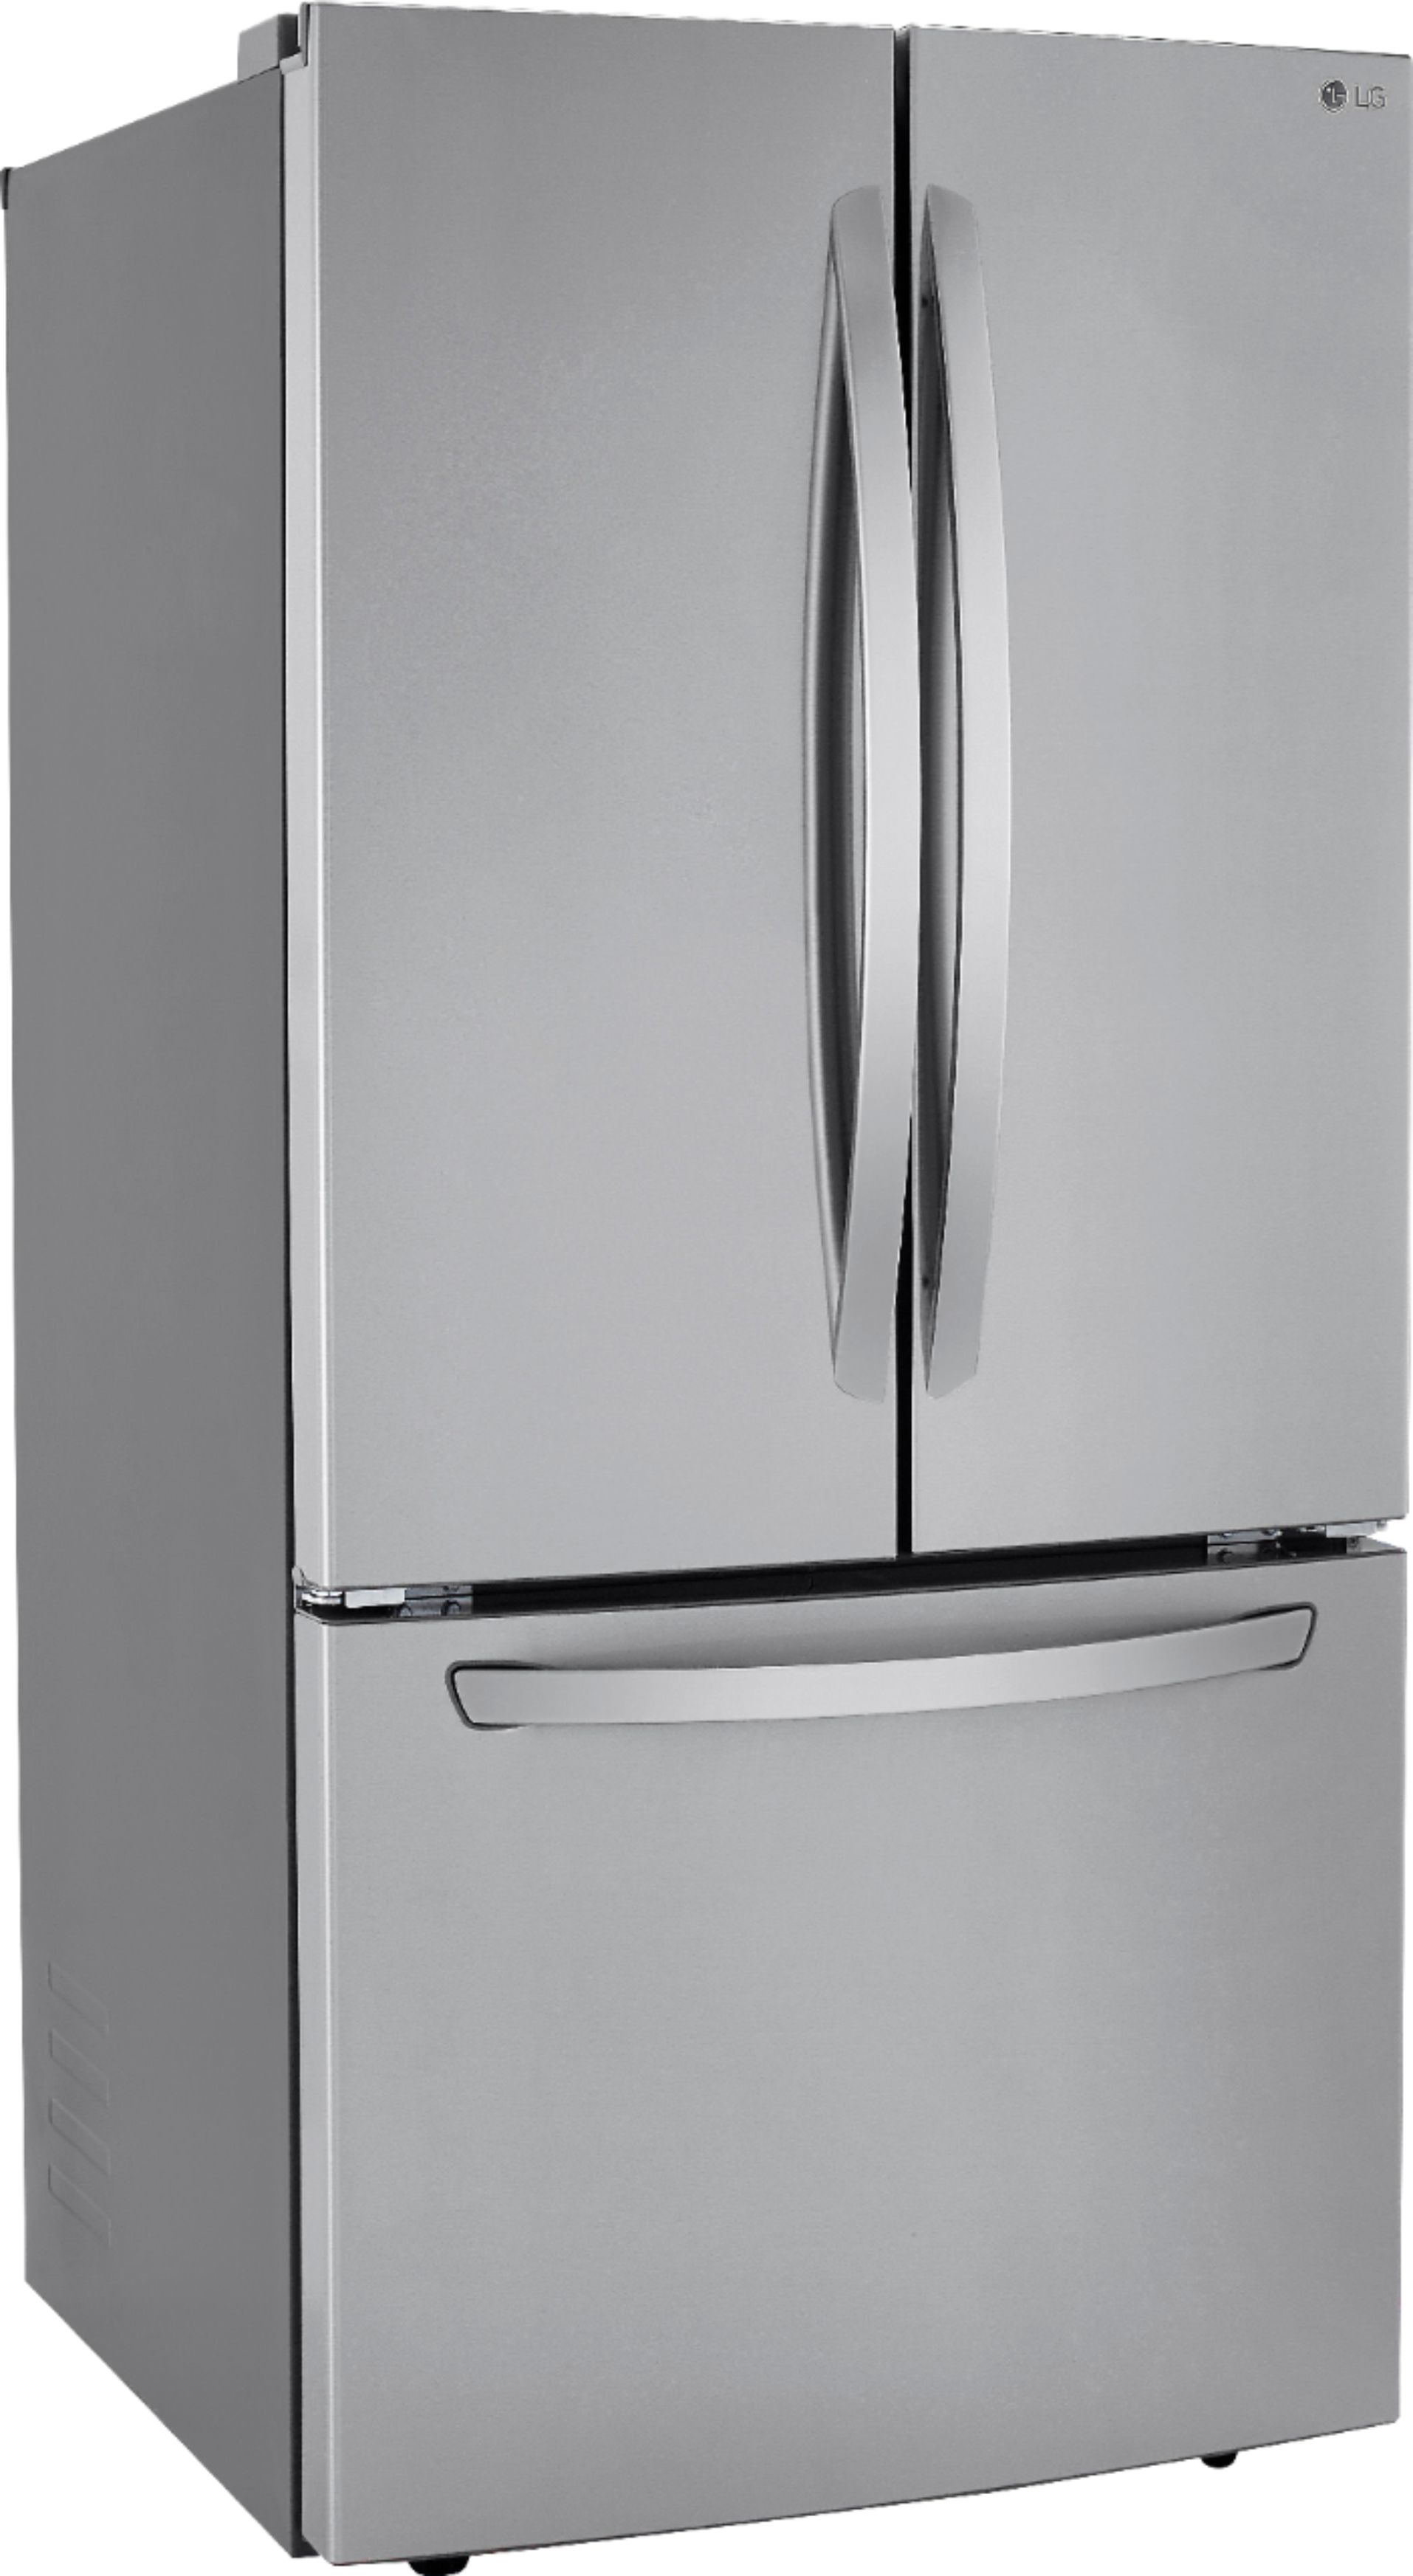 Best Buy Refrigerators Stainless Steel